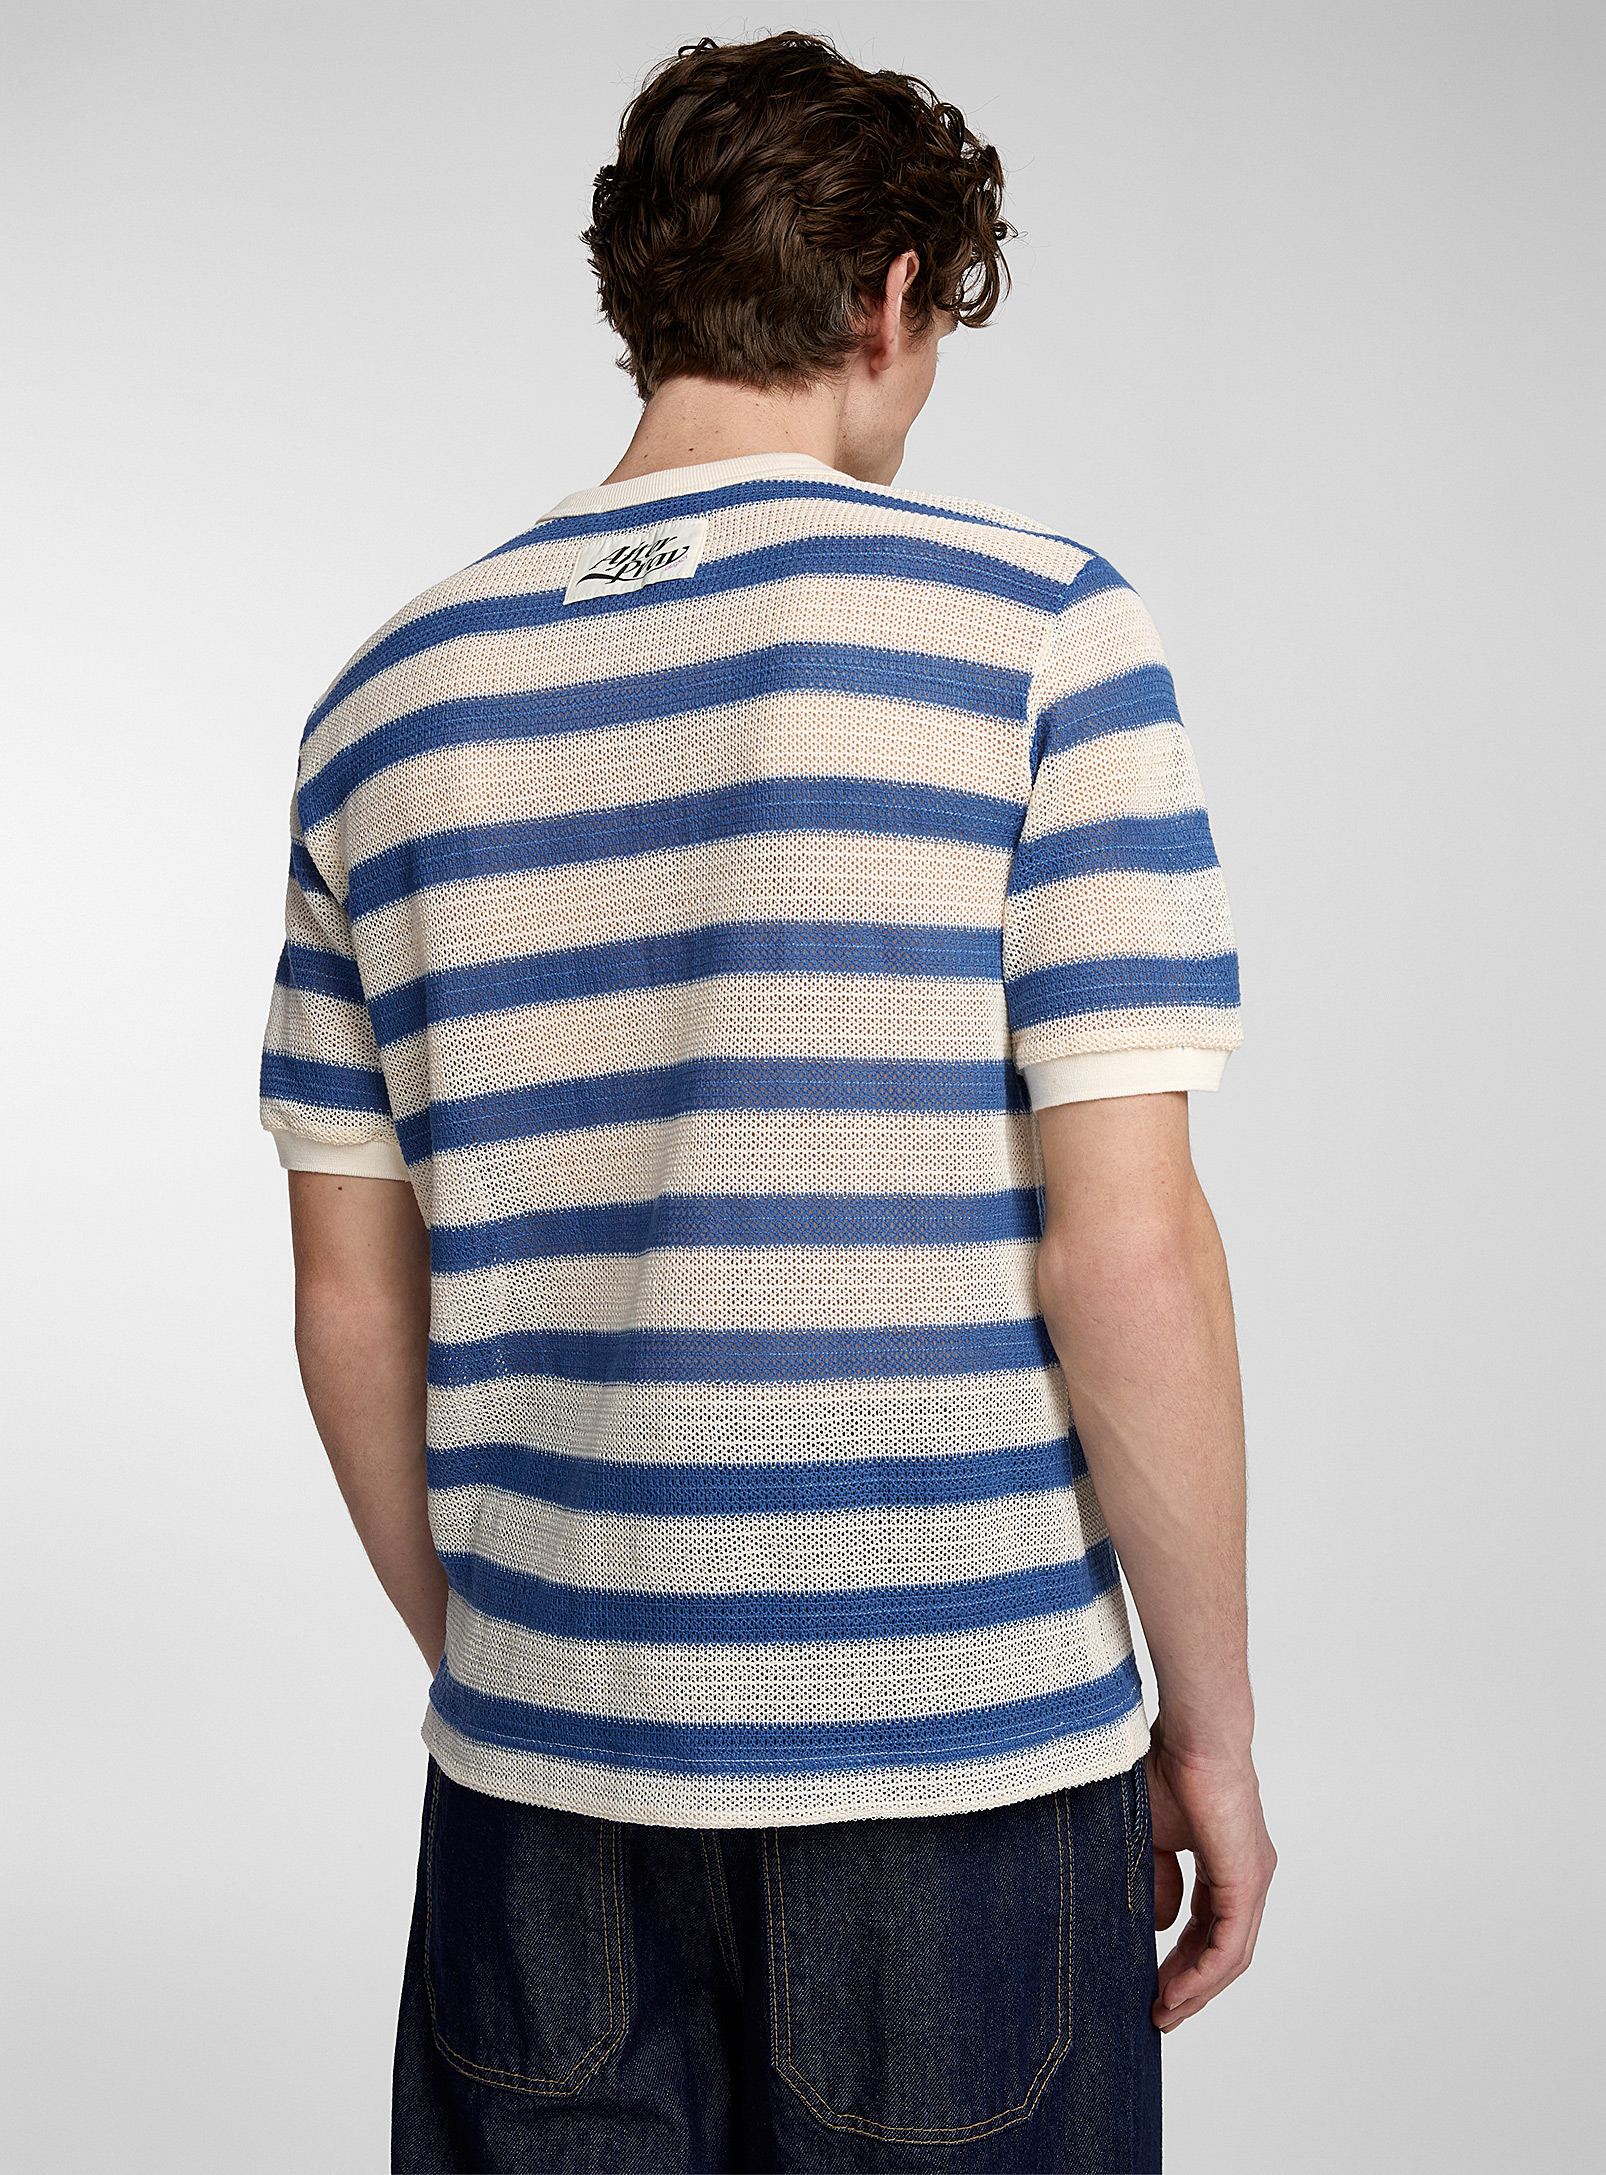 AFTER PRAY - Le t-shirt tricot ajouré rayures nautiques